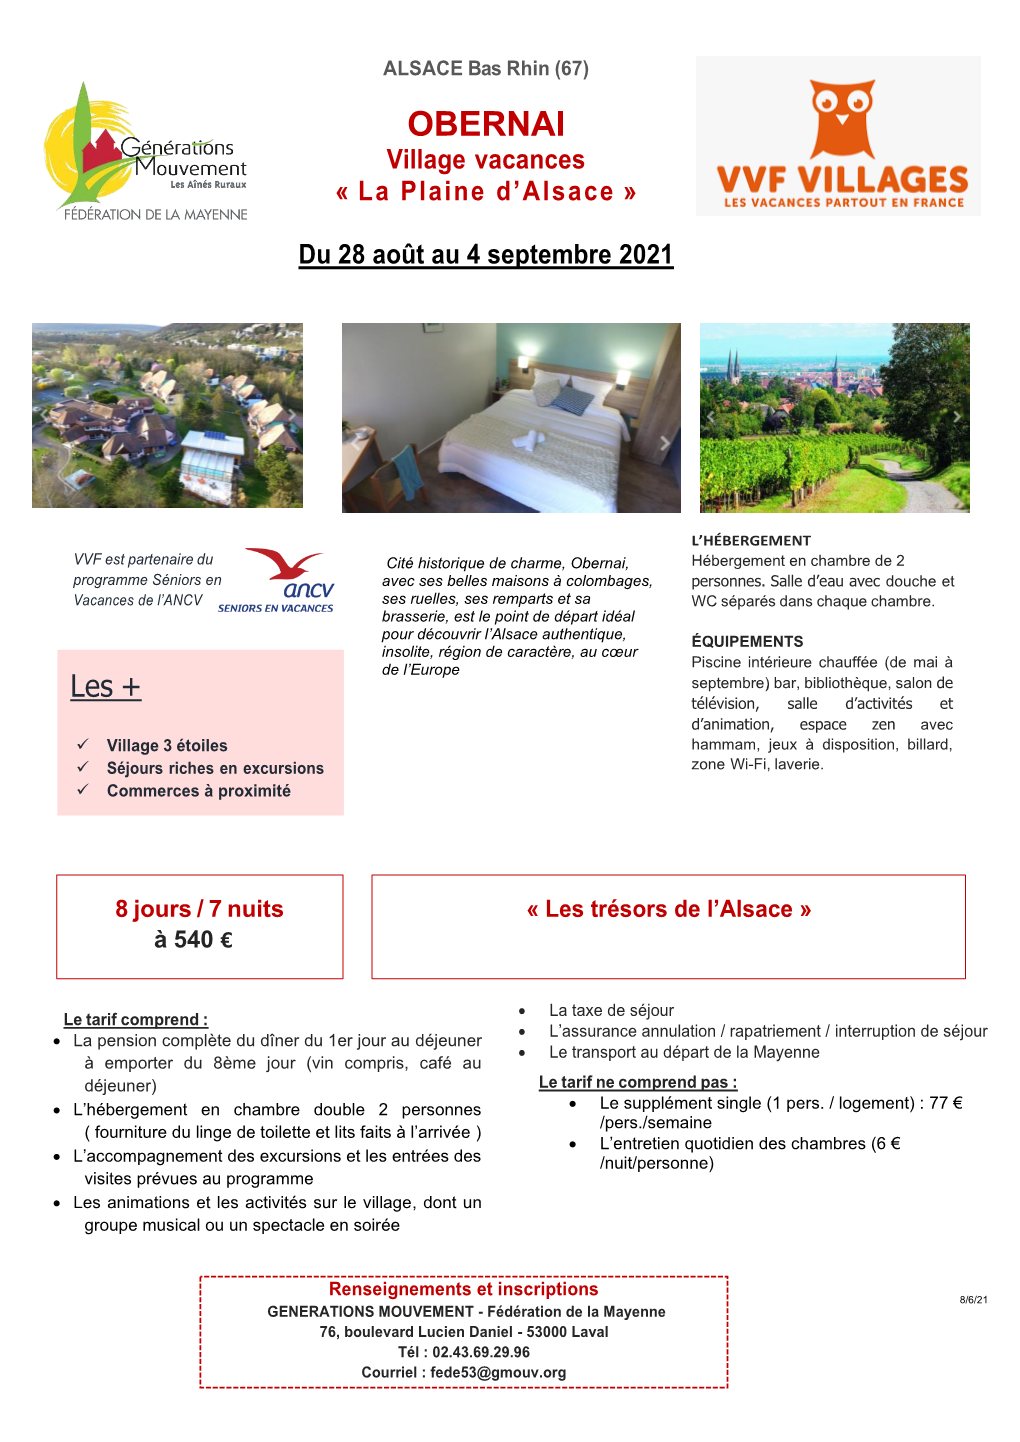 OBERNAI Village Vacances « La Plaine D’Alsace »